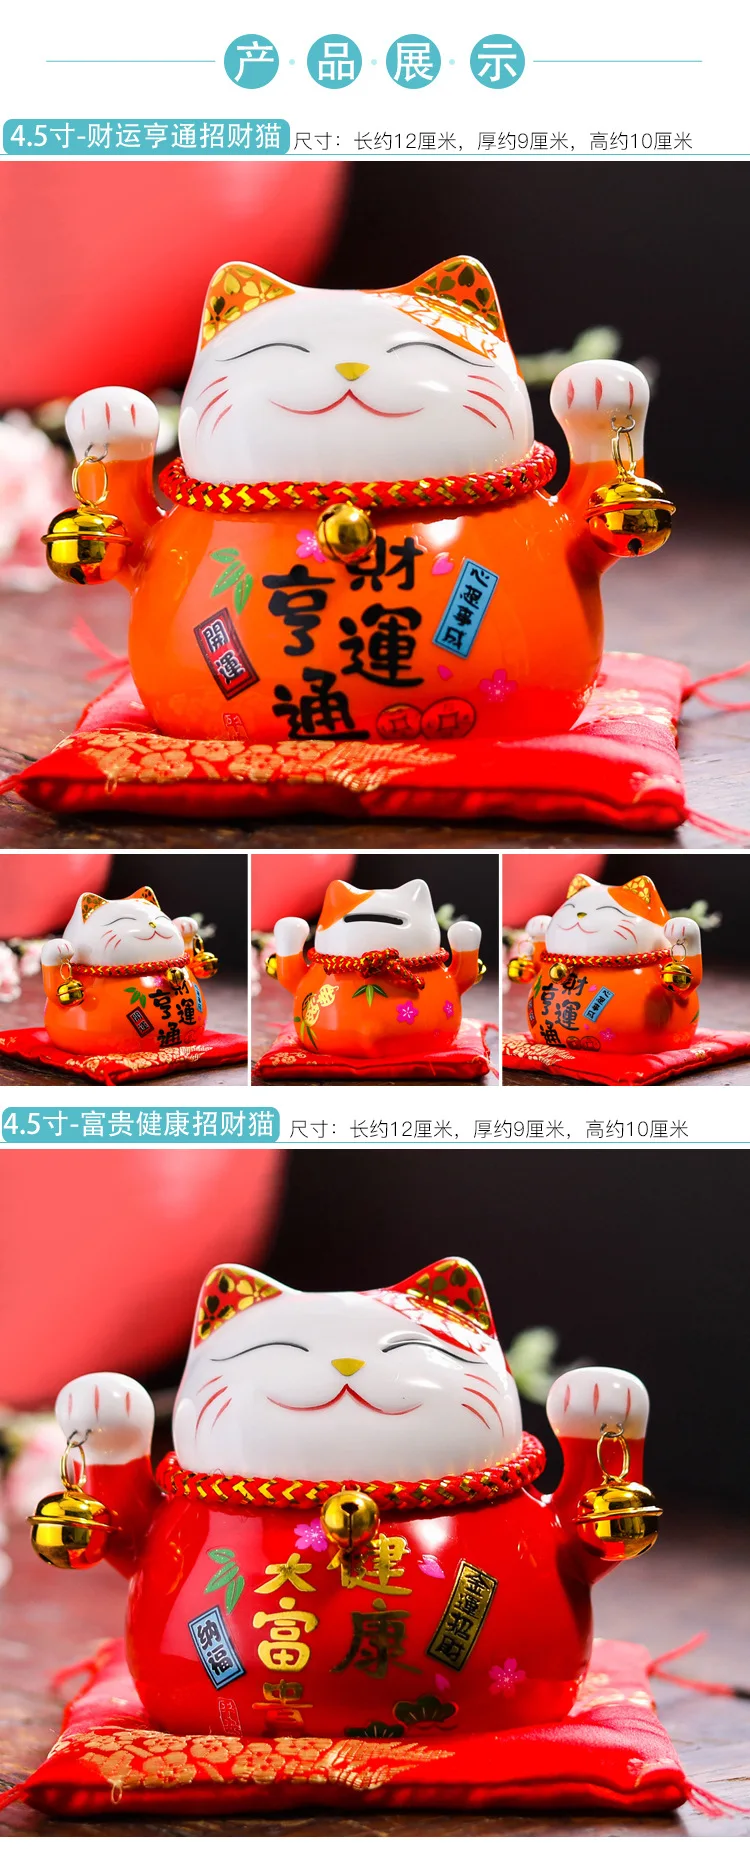 4,5 дюймов Lucky Cat Копилка Керамическая Мини-кошка японский стиль открывающийся подарок на праздник украшения в виде животных украшение для дома гостиной